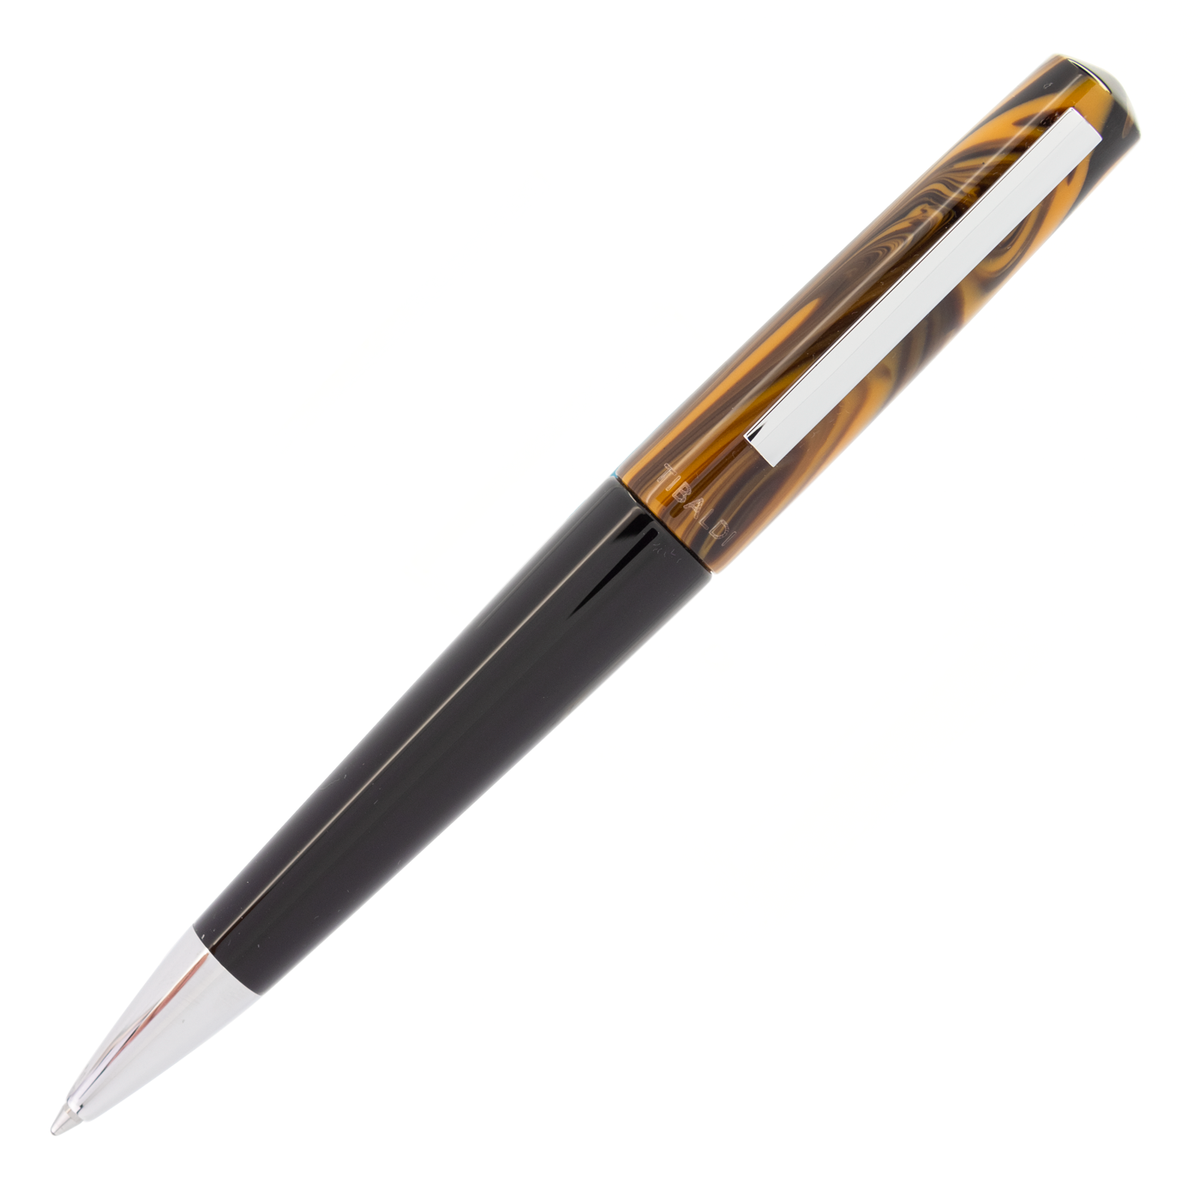 Tibaldi Infrangibile Chrome Yellow Resin Ballpoint Pen